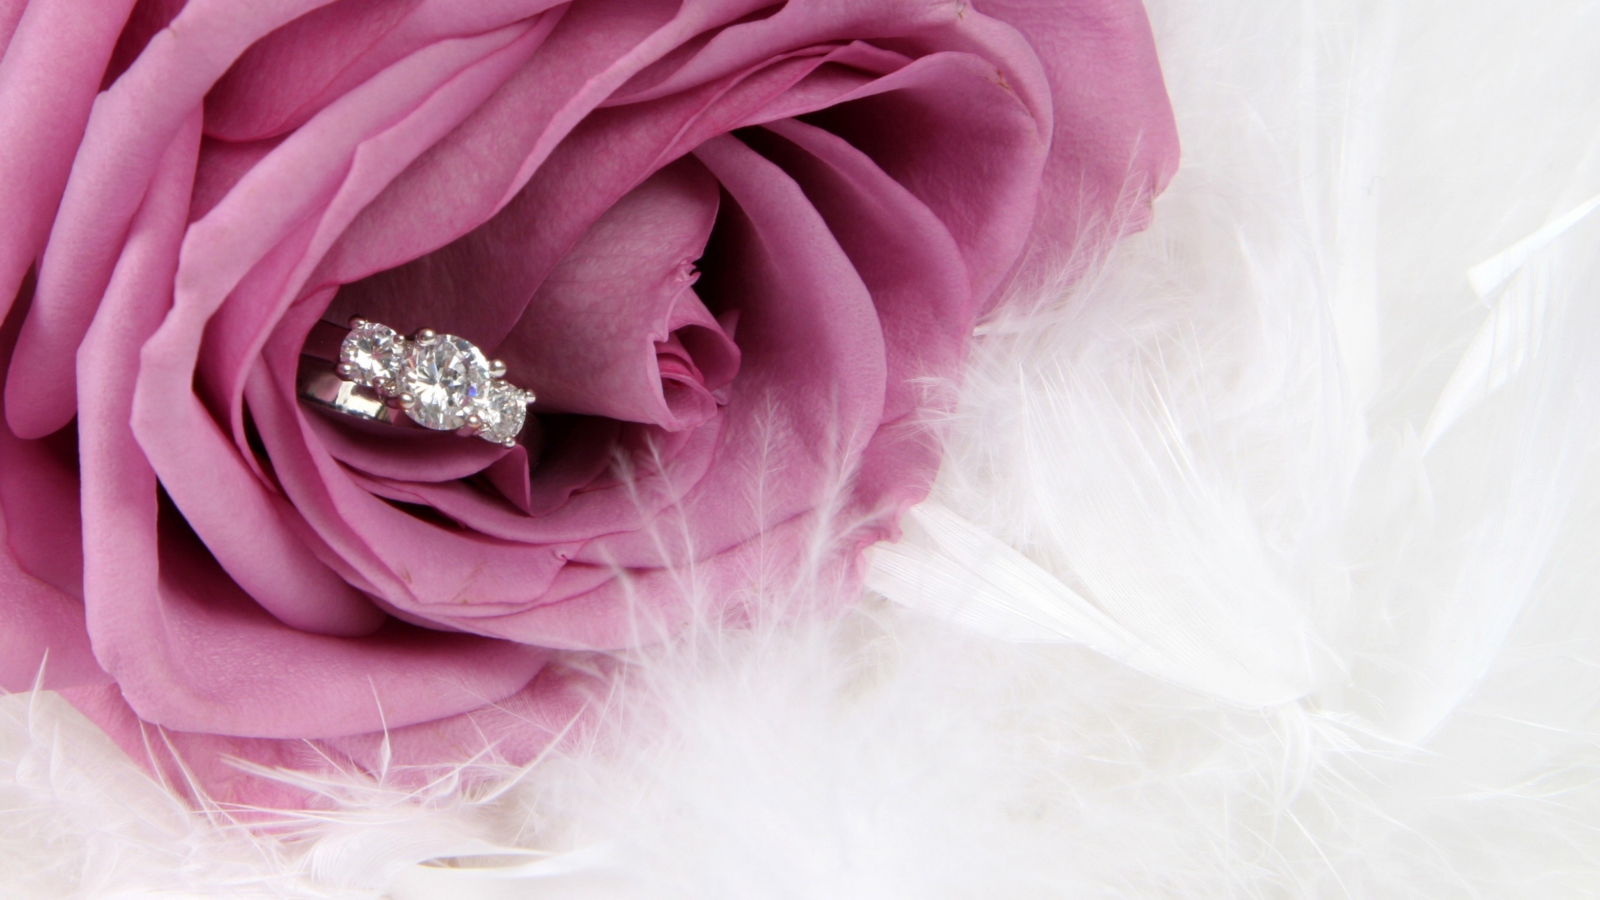 Engagement Ring In Pink Rose screenshot #1 1600x900